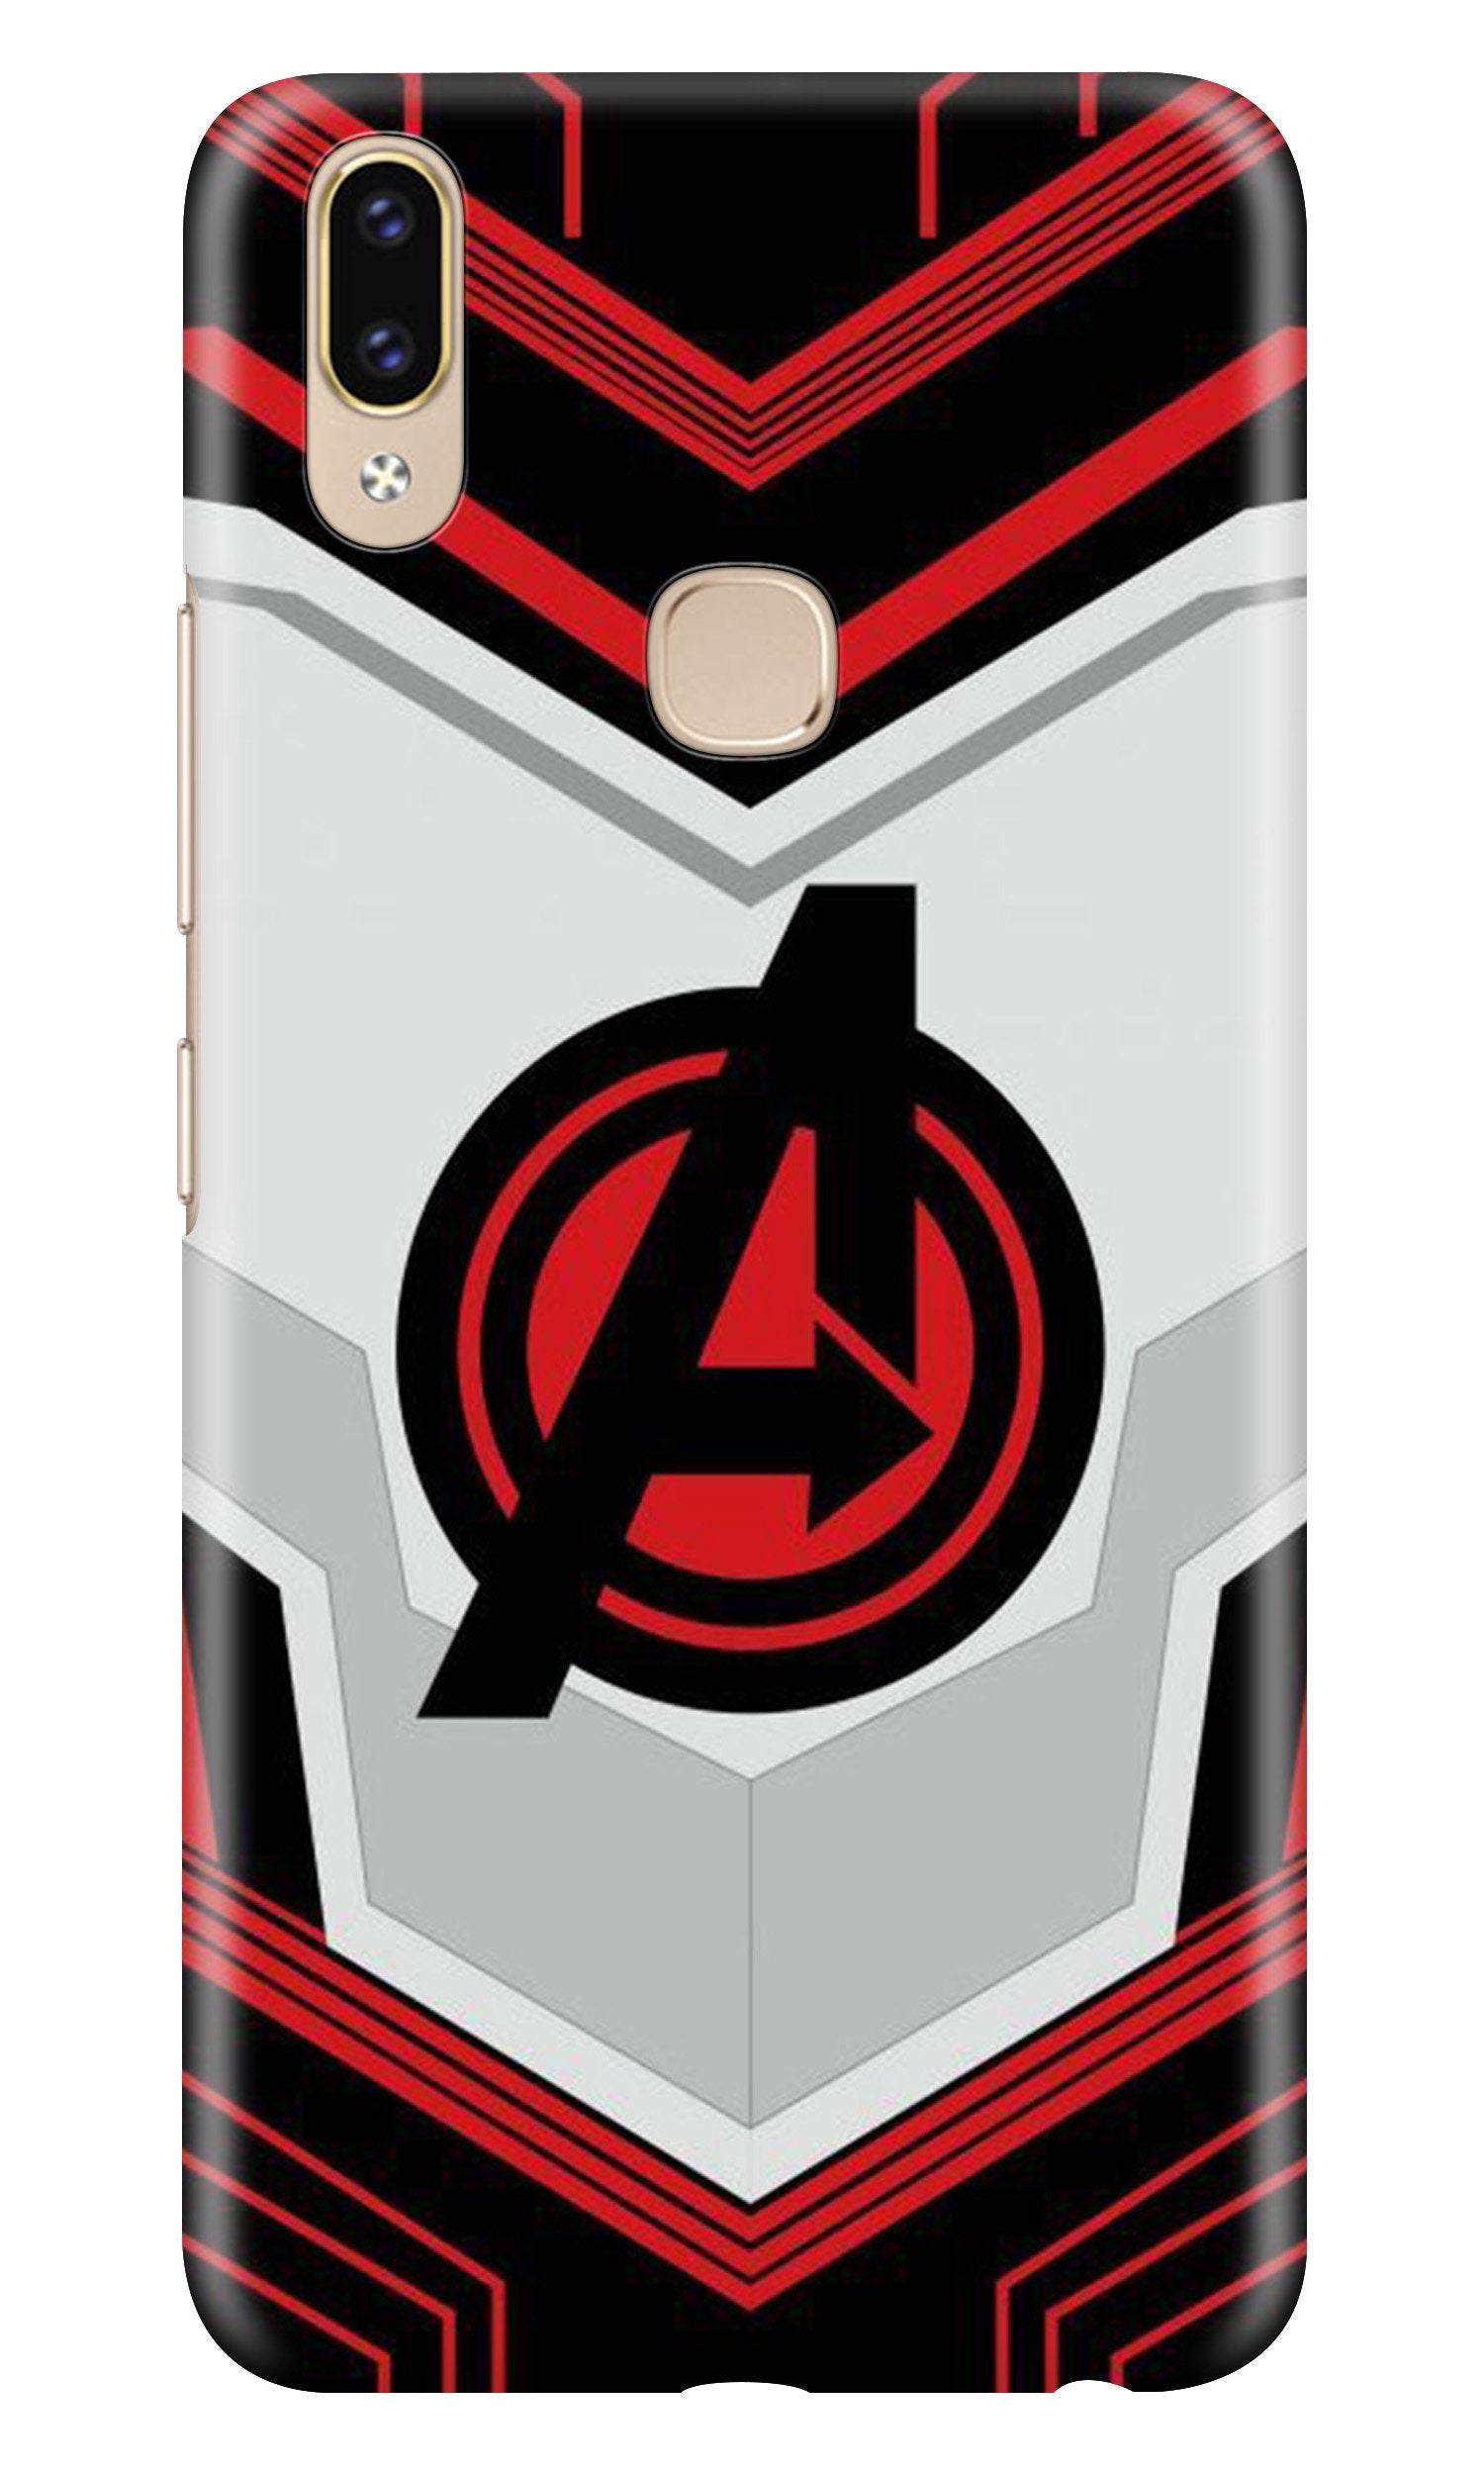 Avengers2 Case for Zenfone 5z (Design No. 255)